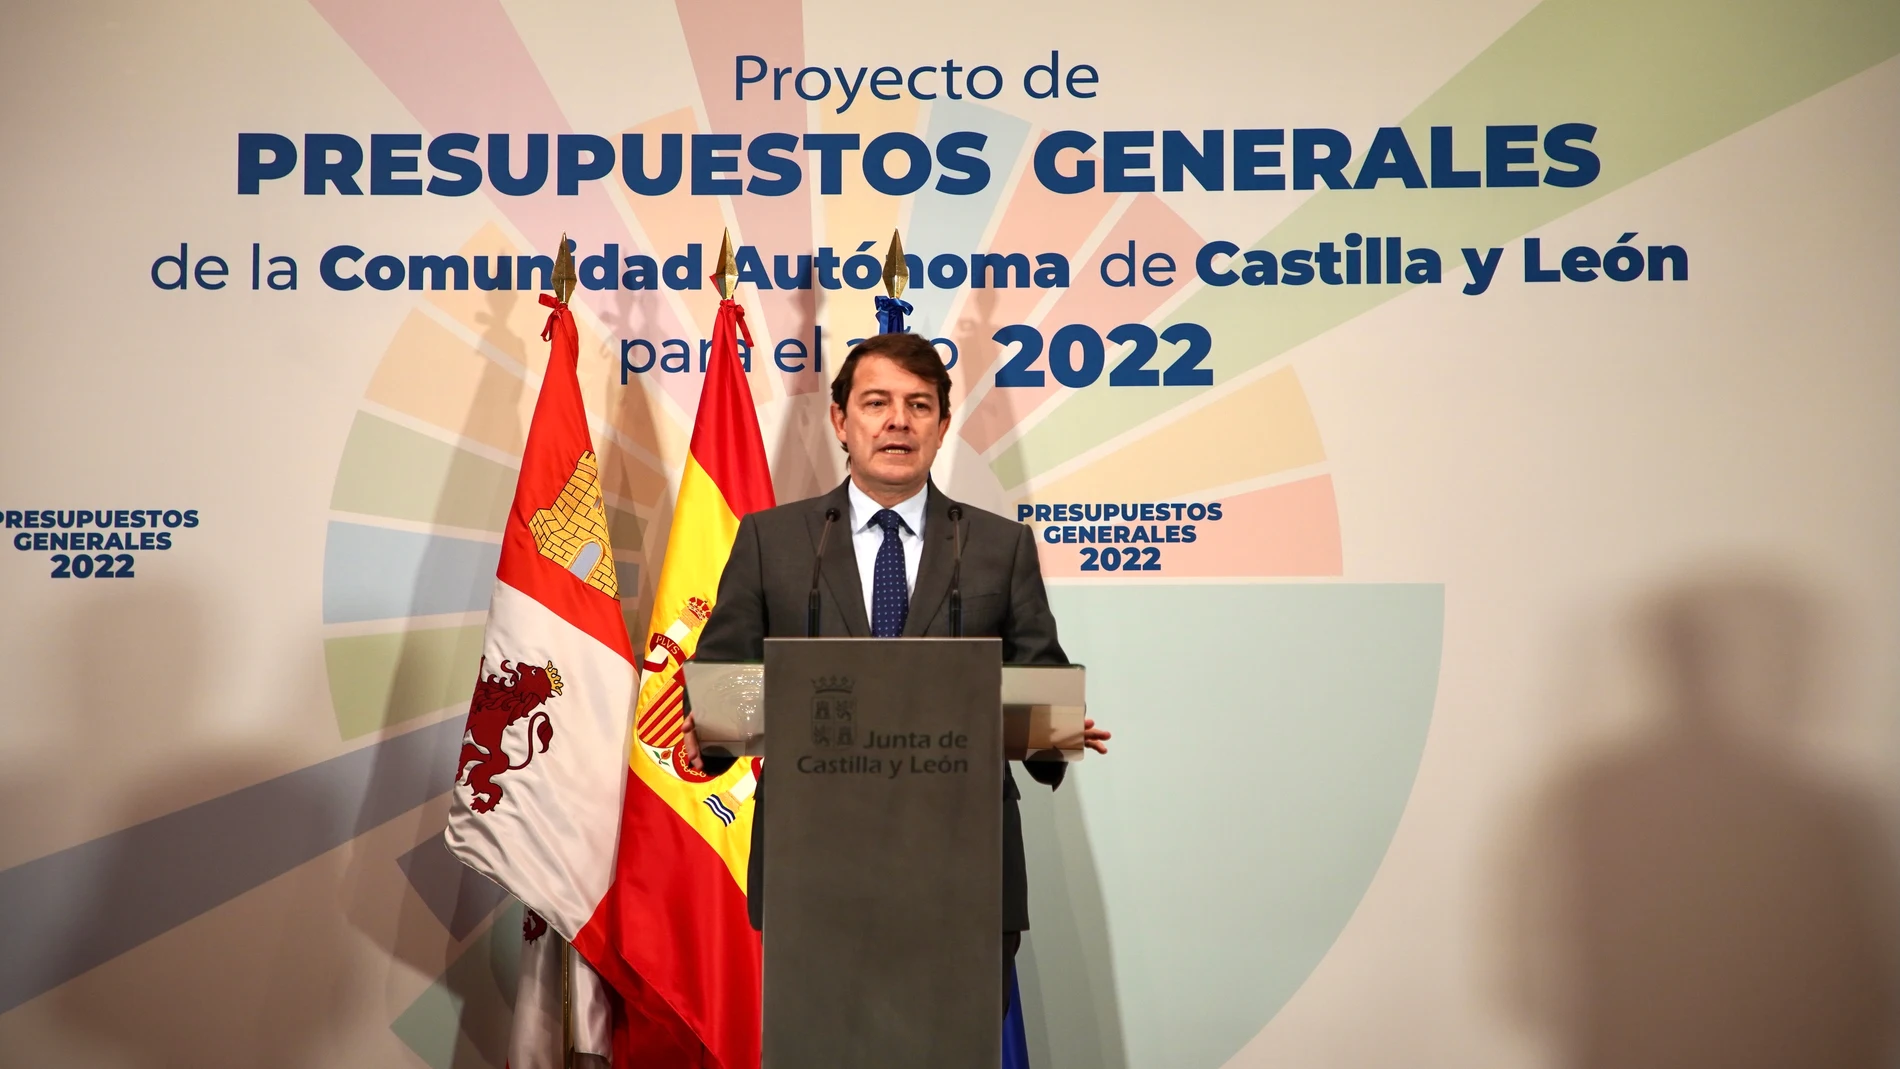 El presidente de Castilla y León, Alfonso Fernández Mañueco, presenta el proyecto de Presupuestos para 2022